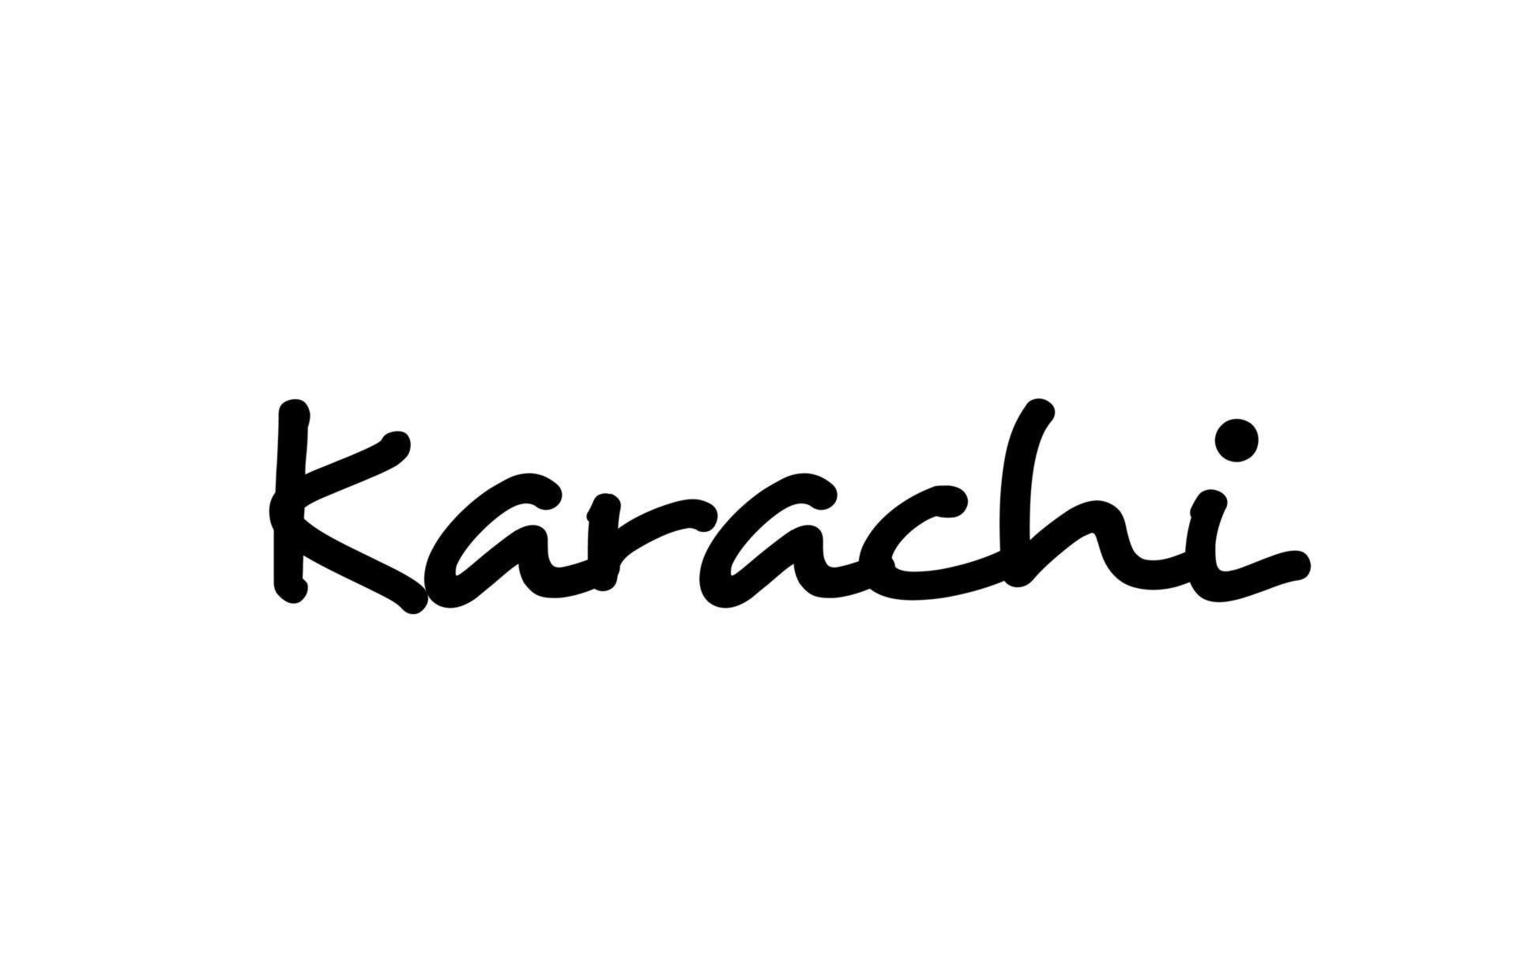 lettrage de main de texte de mot manuscrit de la ville de karachi. texte de calligraphie. typographie en couleur noire vecteur